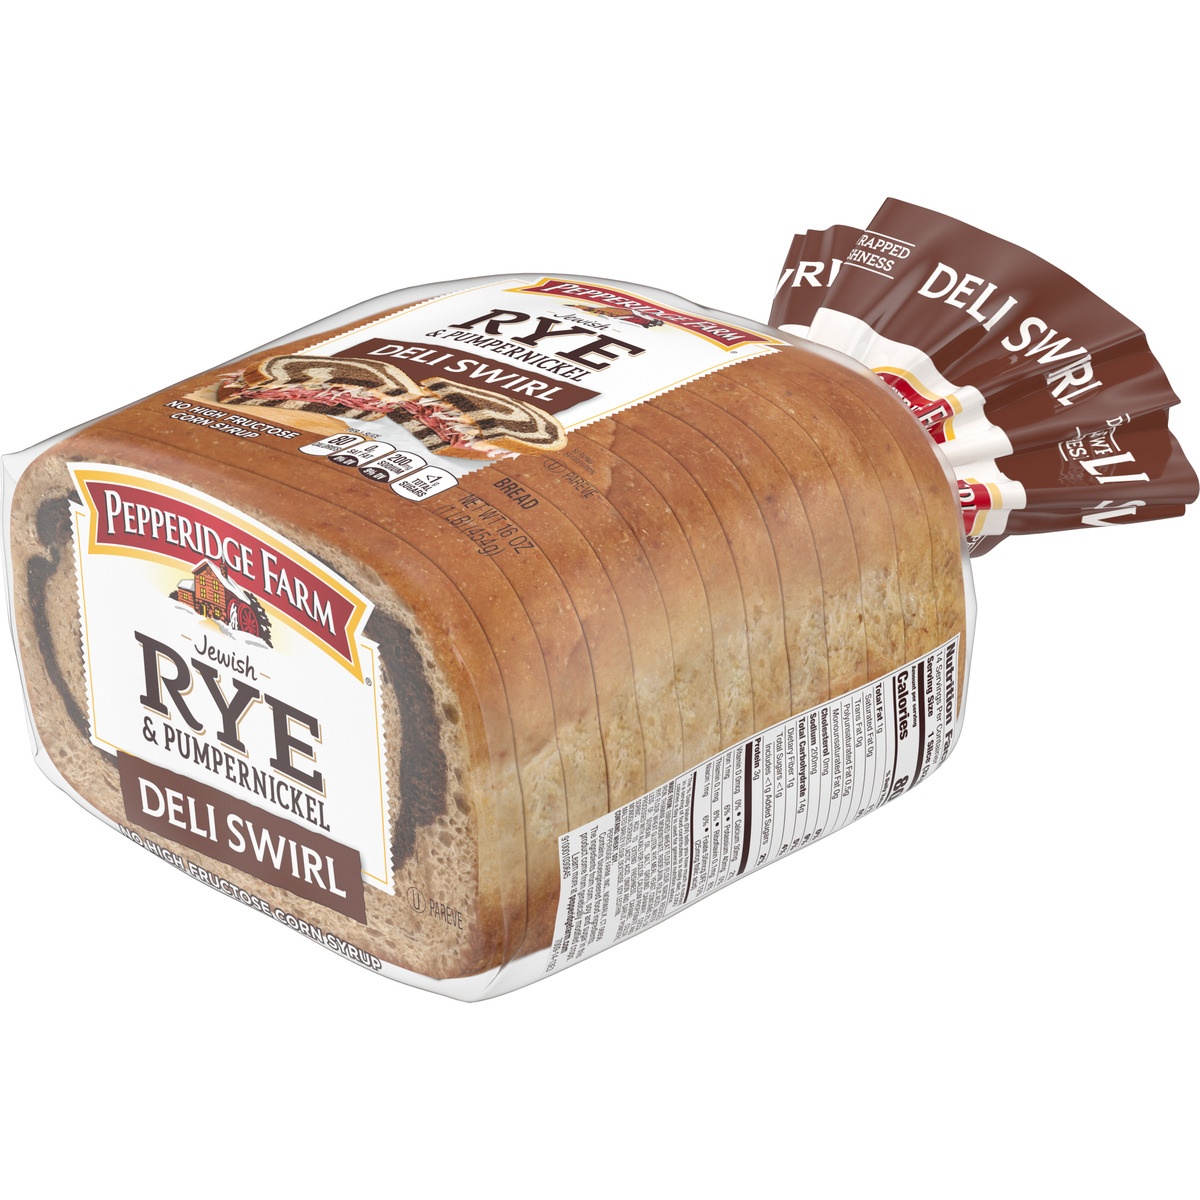 slide 3 of 11, Pepperidge Farm Rye & Pumpernickel Deli Swirl Bread, 16 oz